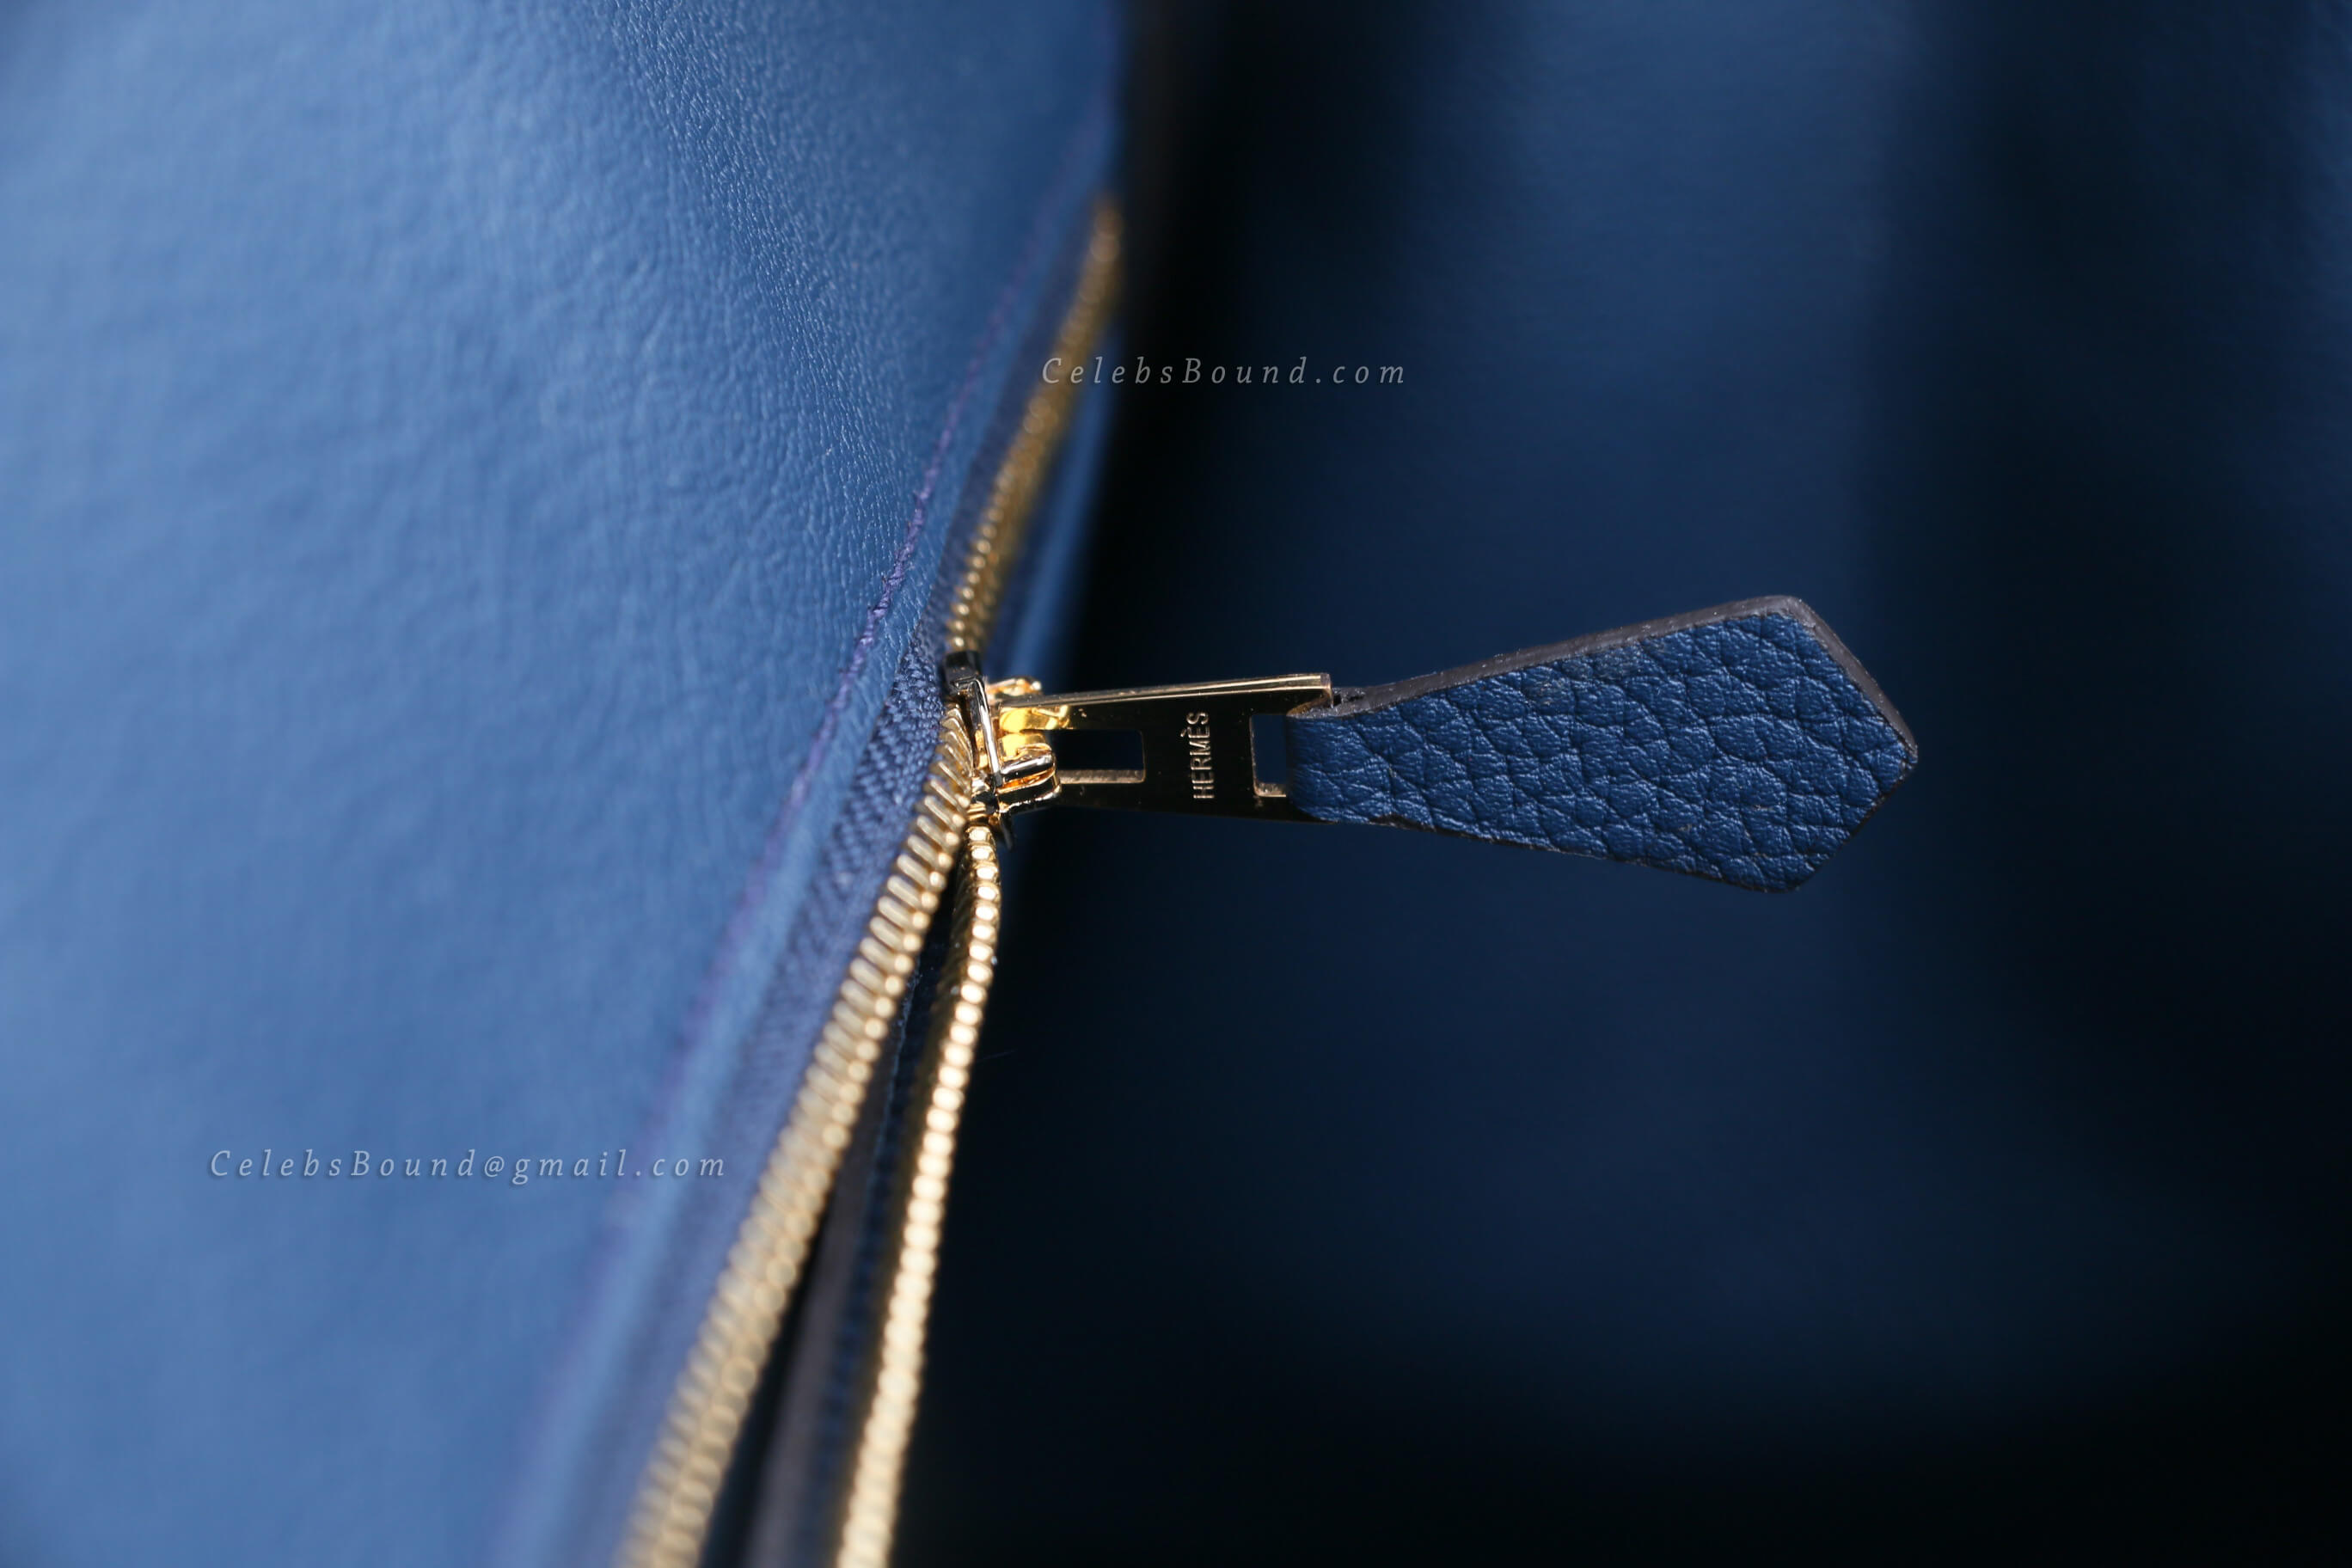 Hermes bags zipper handle lies parallel to the zip